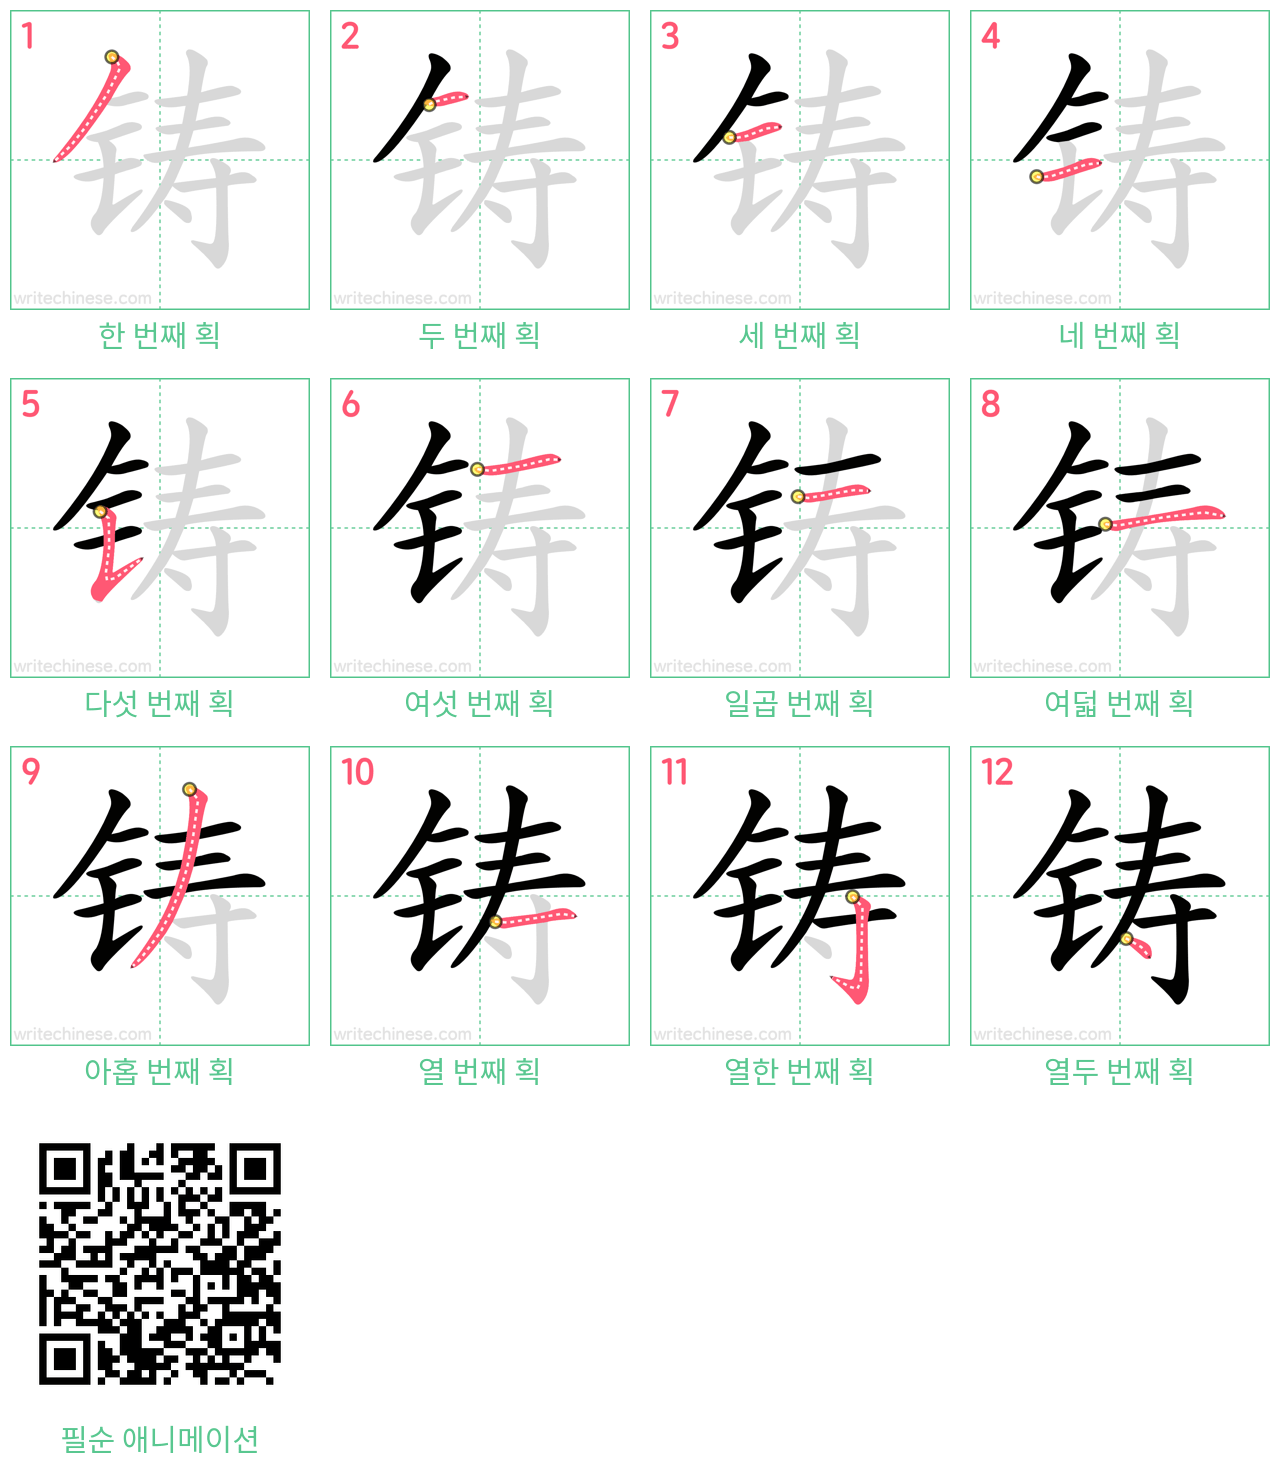 铸 step-by-step stroke order diagrams